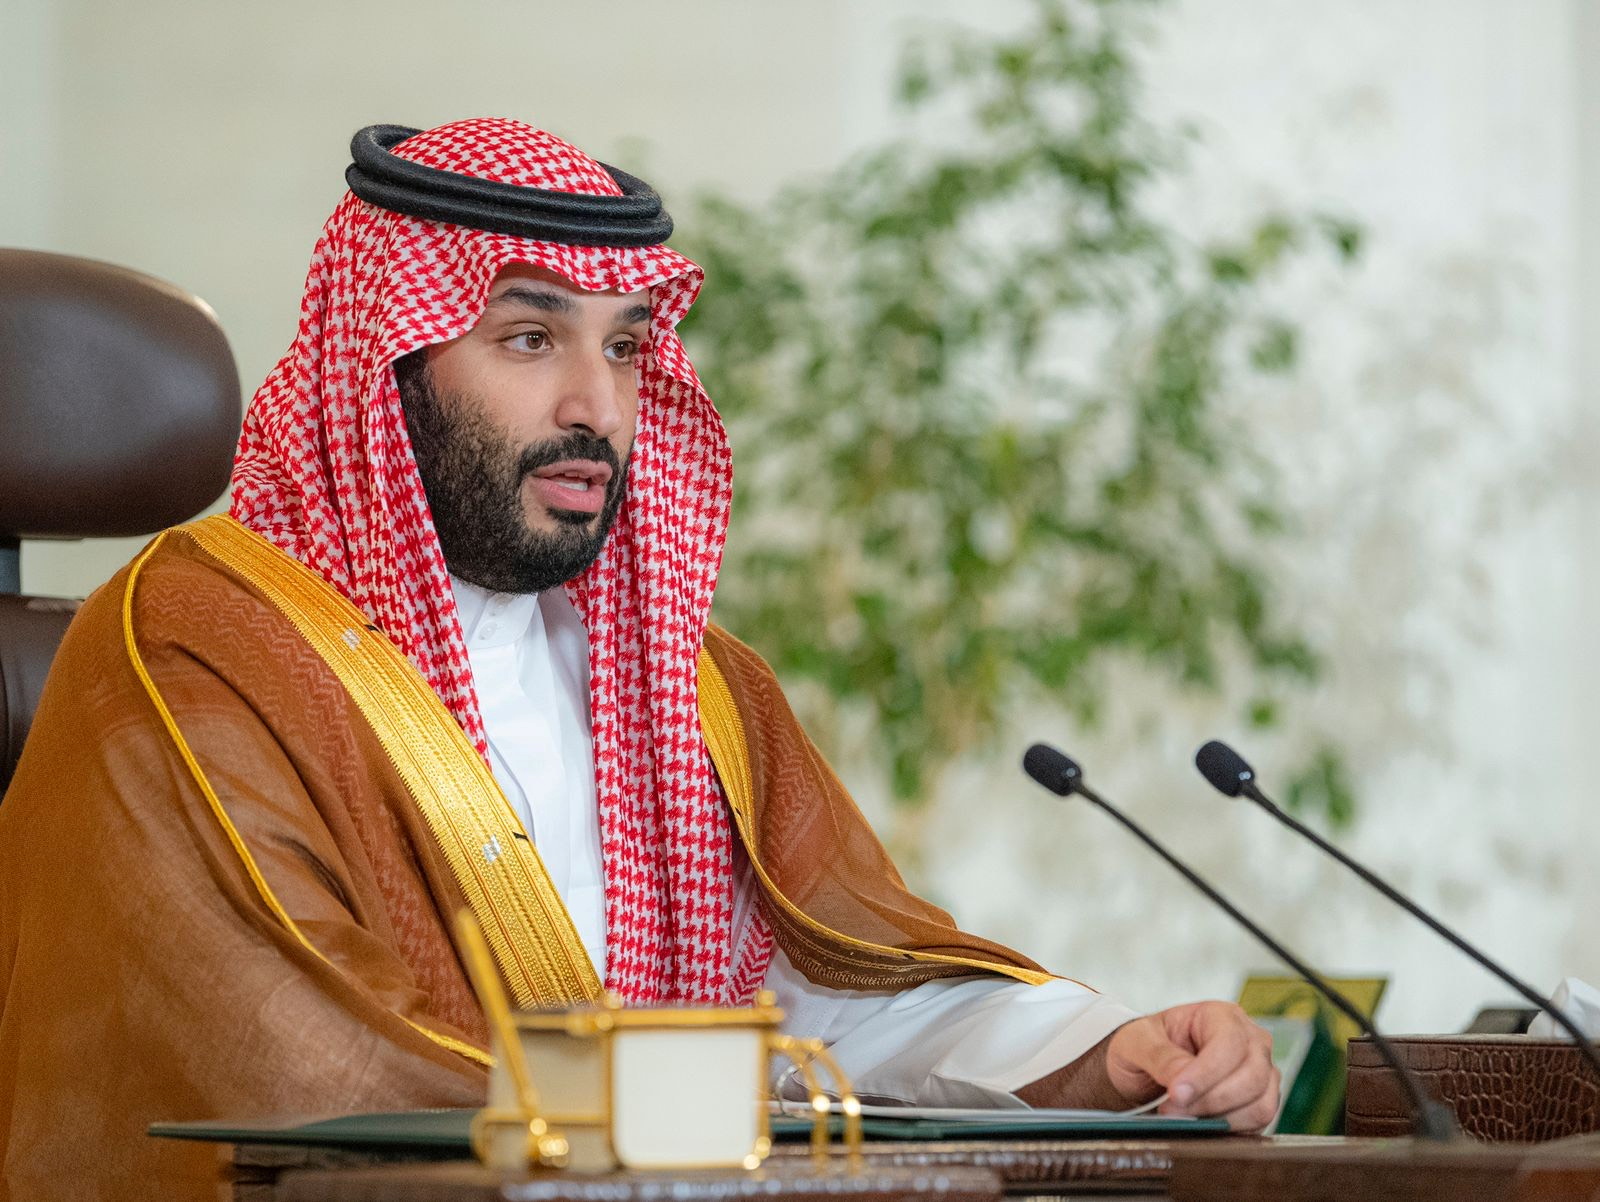 Thái tử Mohammed bin Salman tại sự kiện ở Riyadh, Arab Saudi hồi tháng 10/2021. Ảnh: Reuters